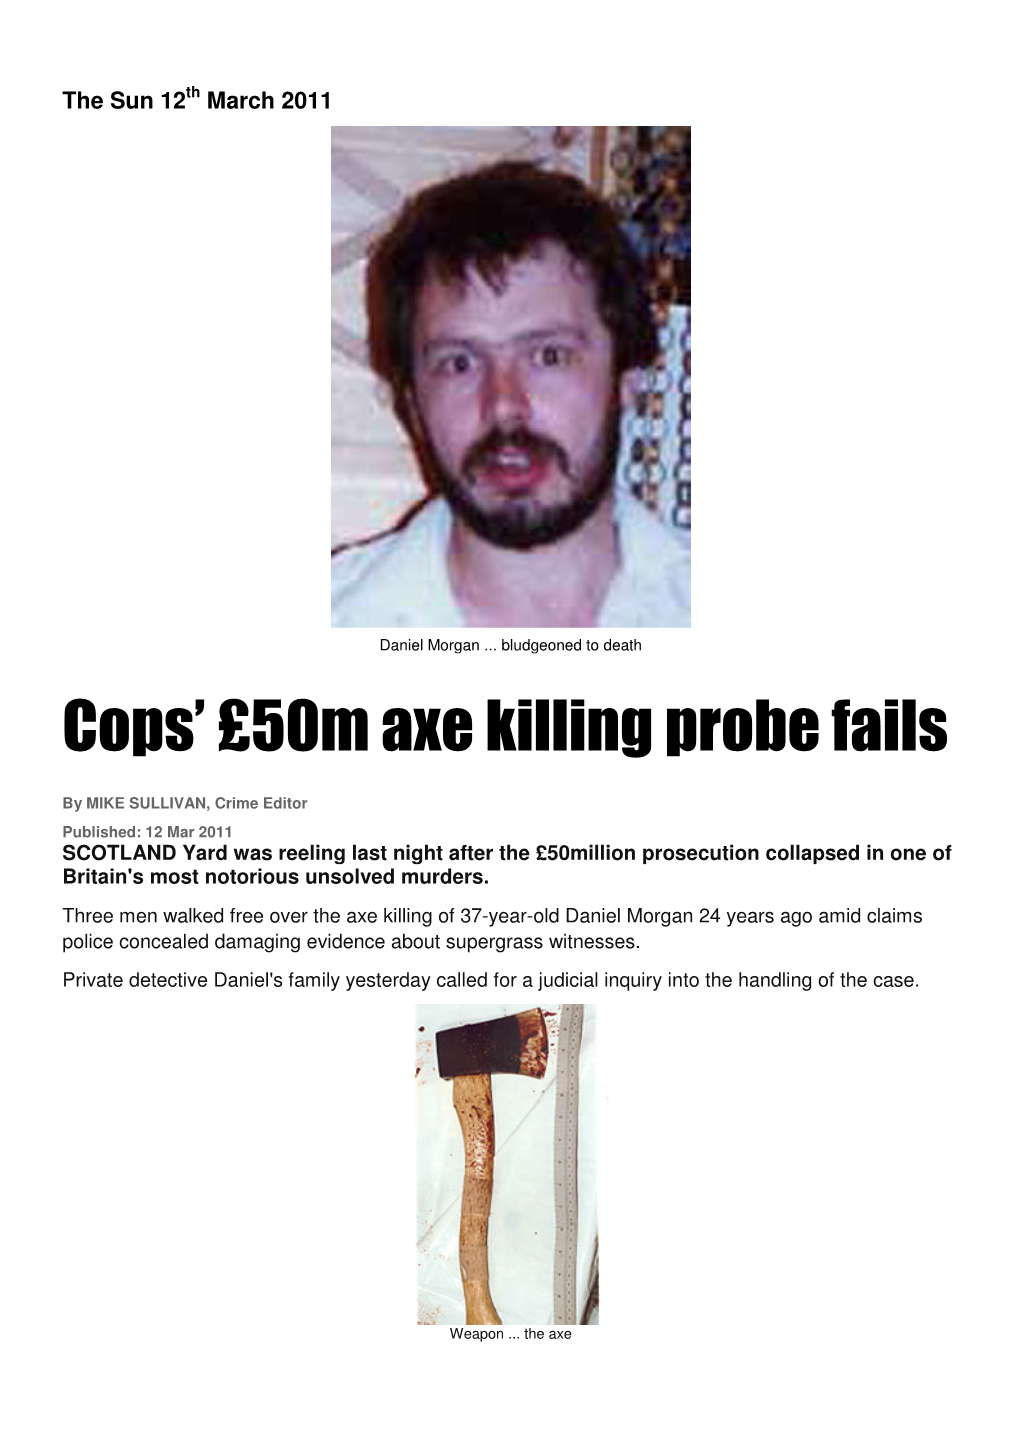 Cops' £50M Axe Killing Probe Fails